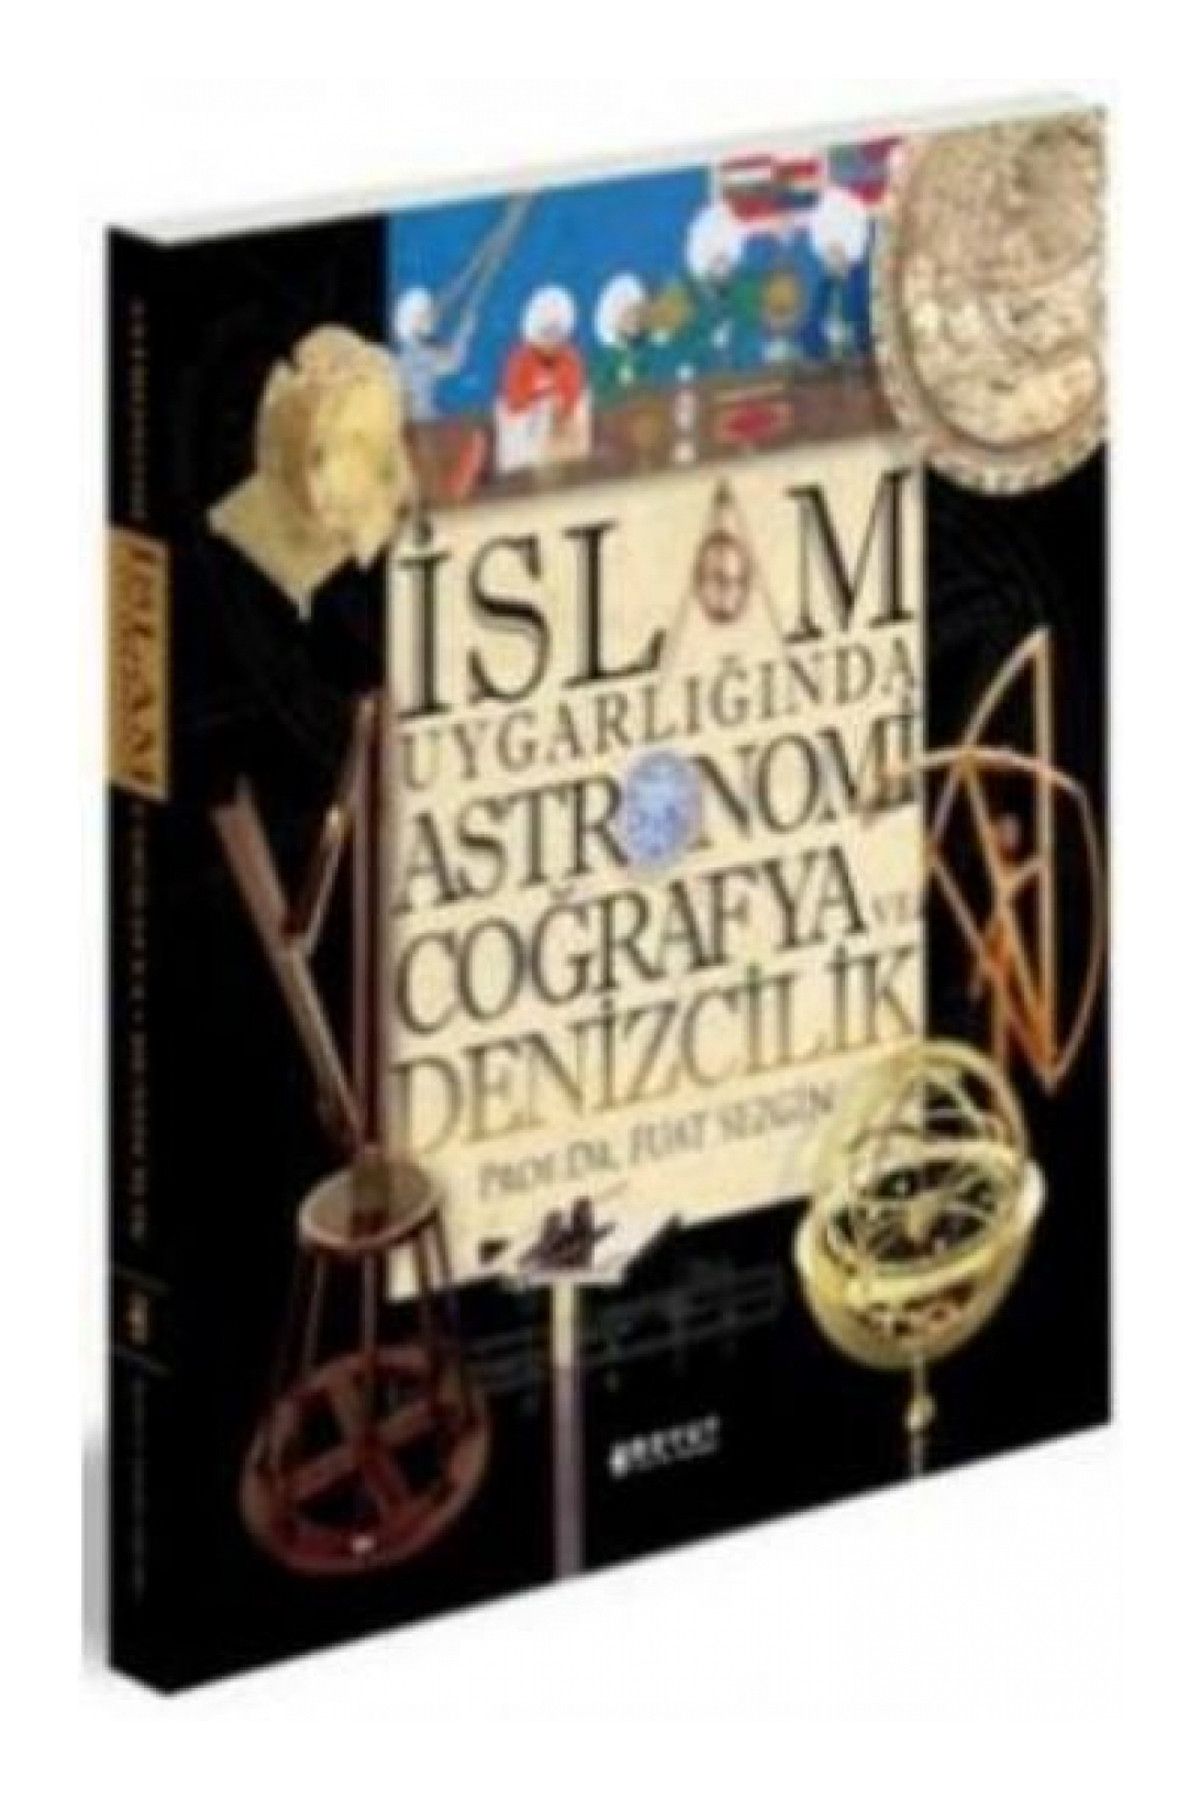 BOYUT YAYINLARI İslam Uygarlığında Astronomi Coğrafya ve Denizcilik